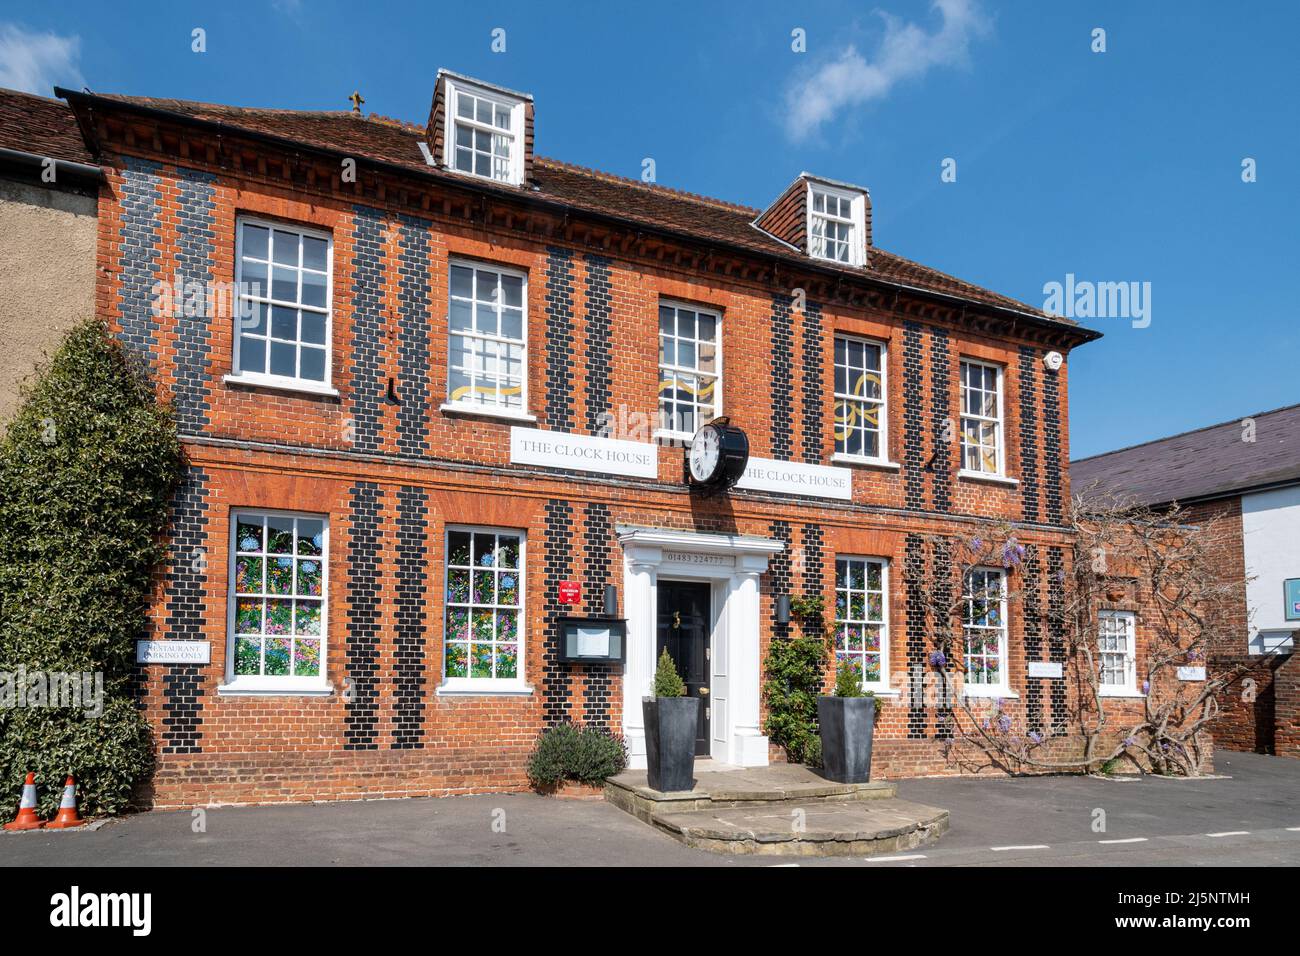 The Clock House, un edificio storico georgiano ora un ristorante stellato Michelin, nel villaggio di Ripley, Surrey, Inghilterra, Regno Unito Foto Stock